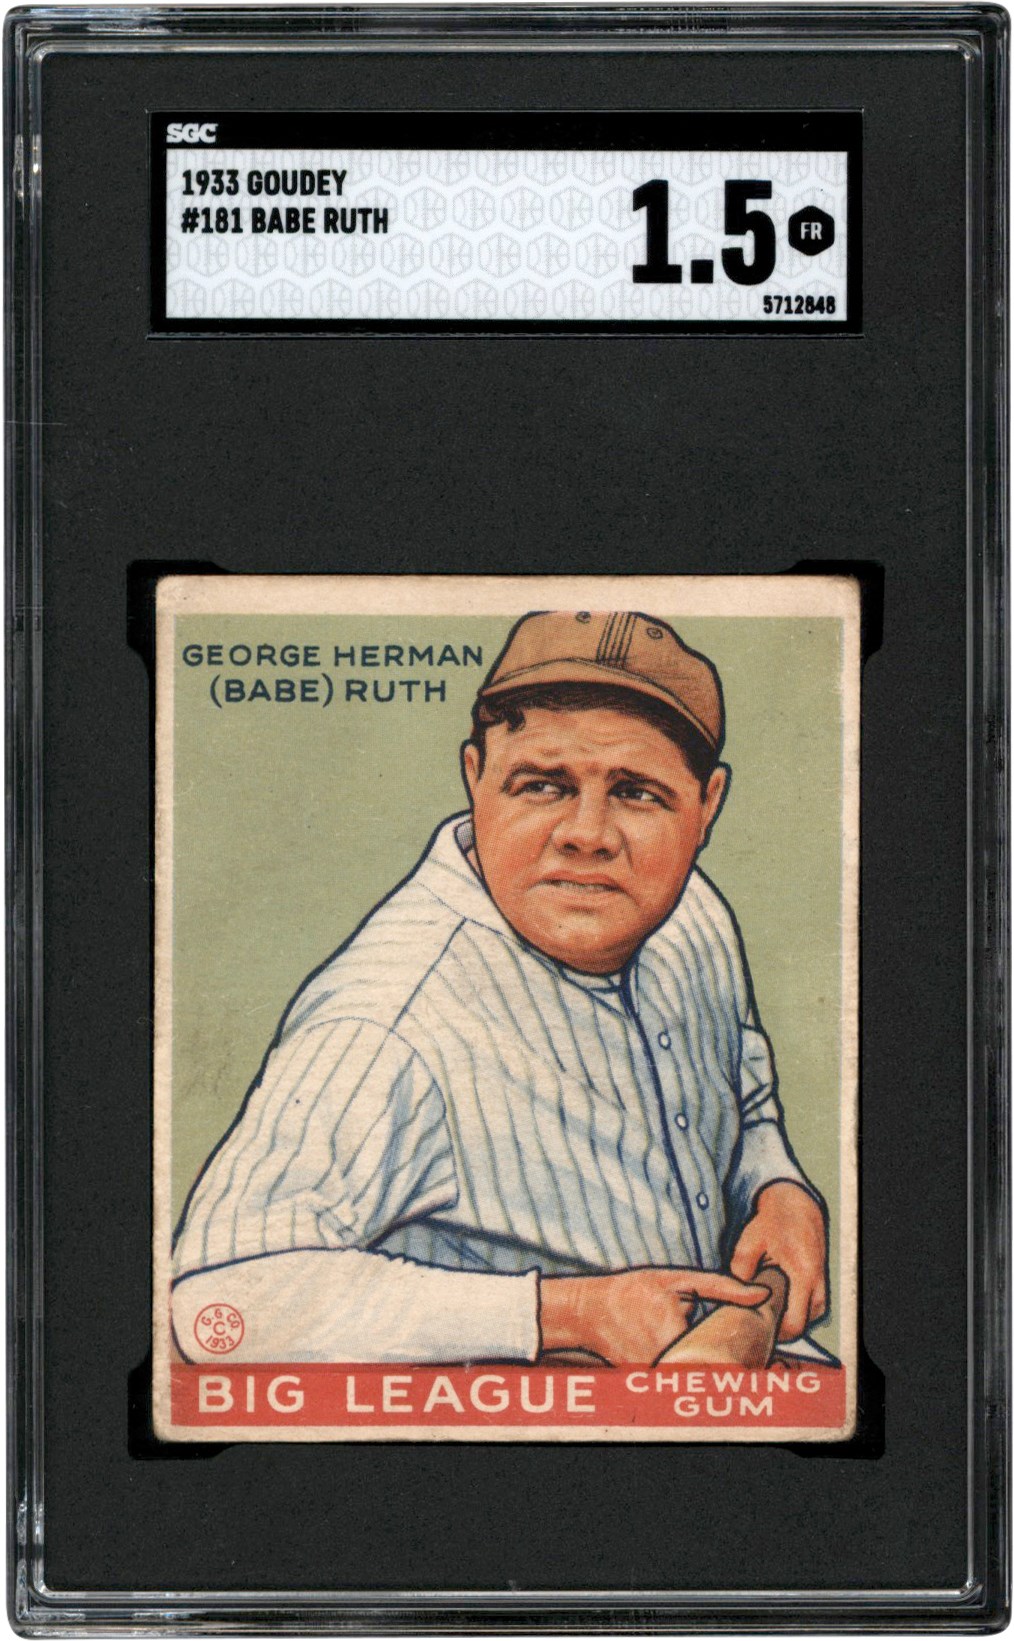 - 1933 Goudey #181 Babe Ruth SGC FR 1.5